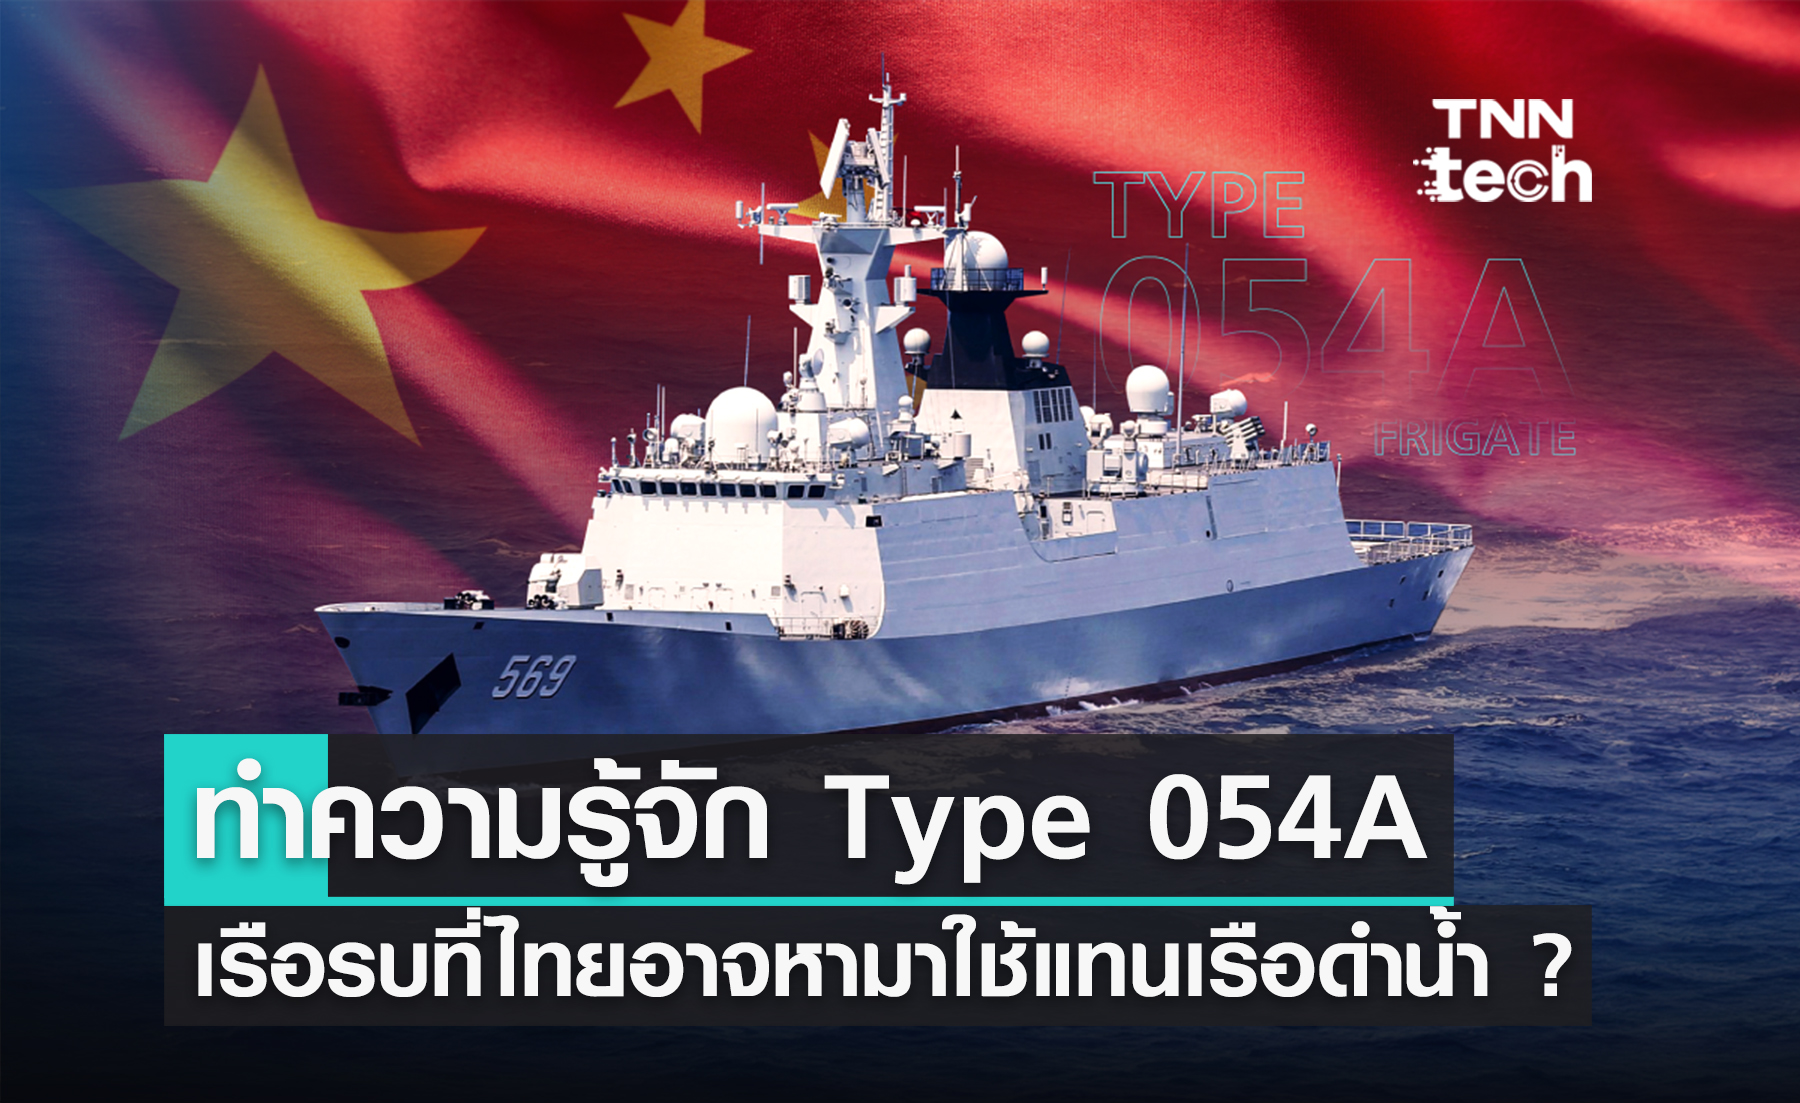 ทำความรู้จัก Type 054A เรือรบที่ไทยอาจหามาใช้แทนเรือดำน้ำจากจีน